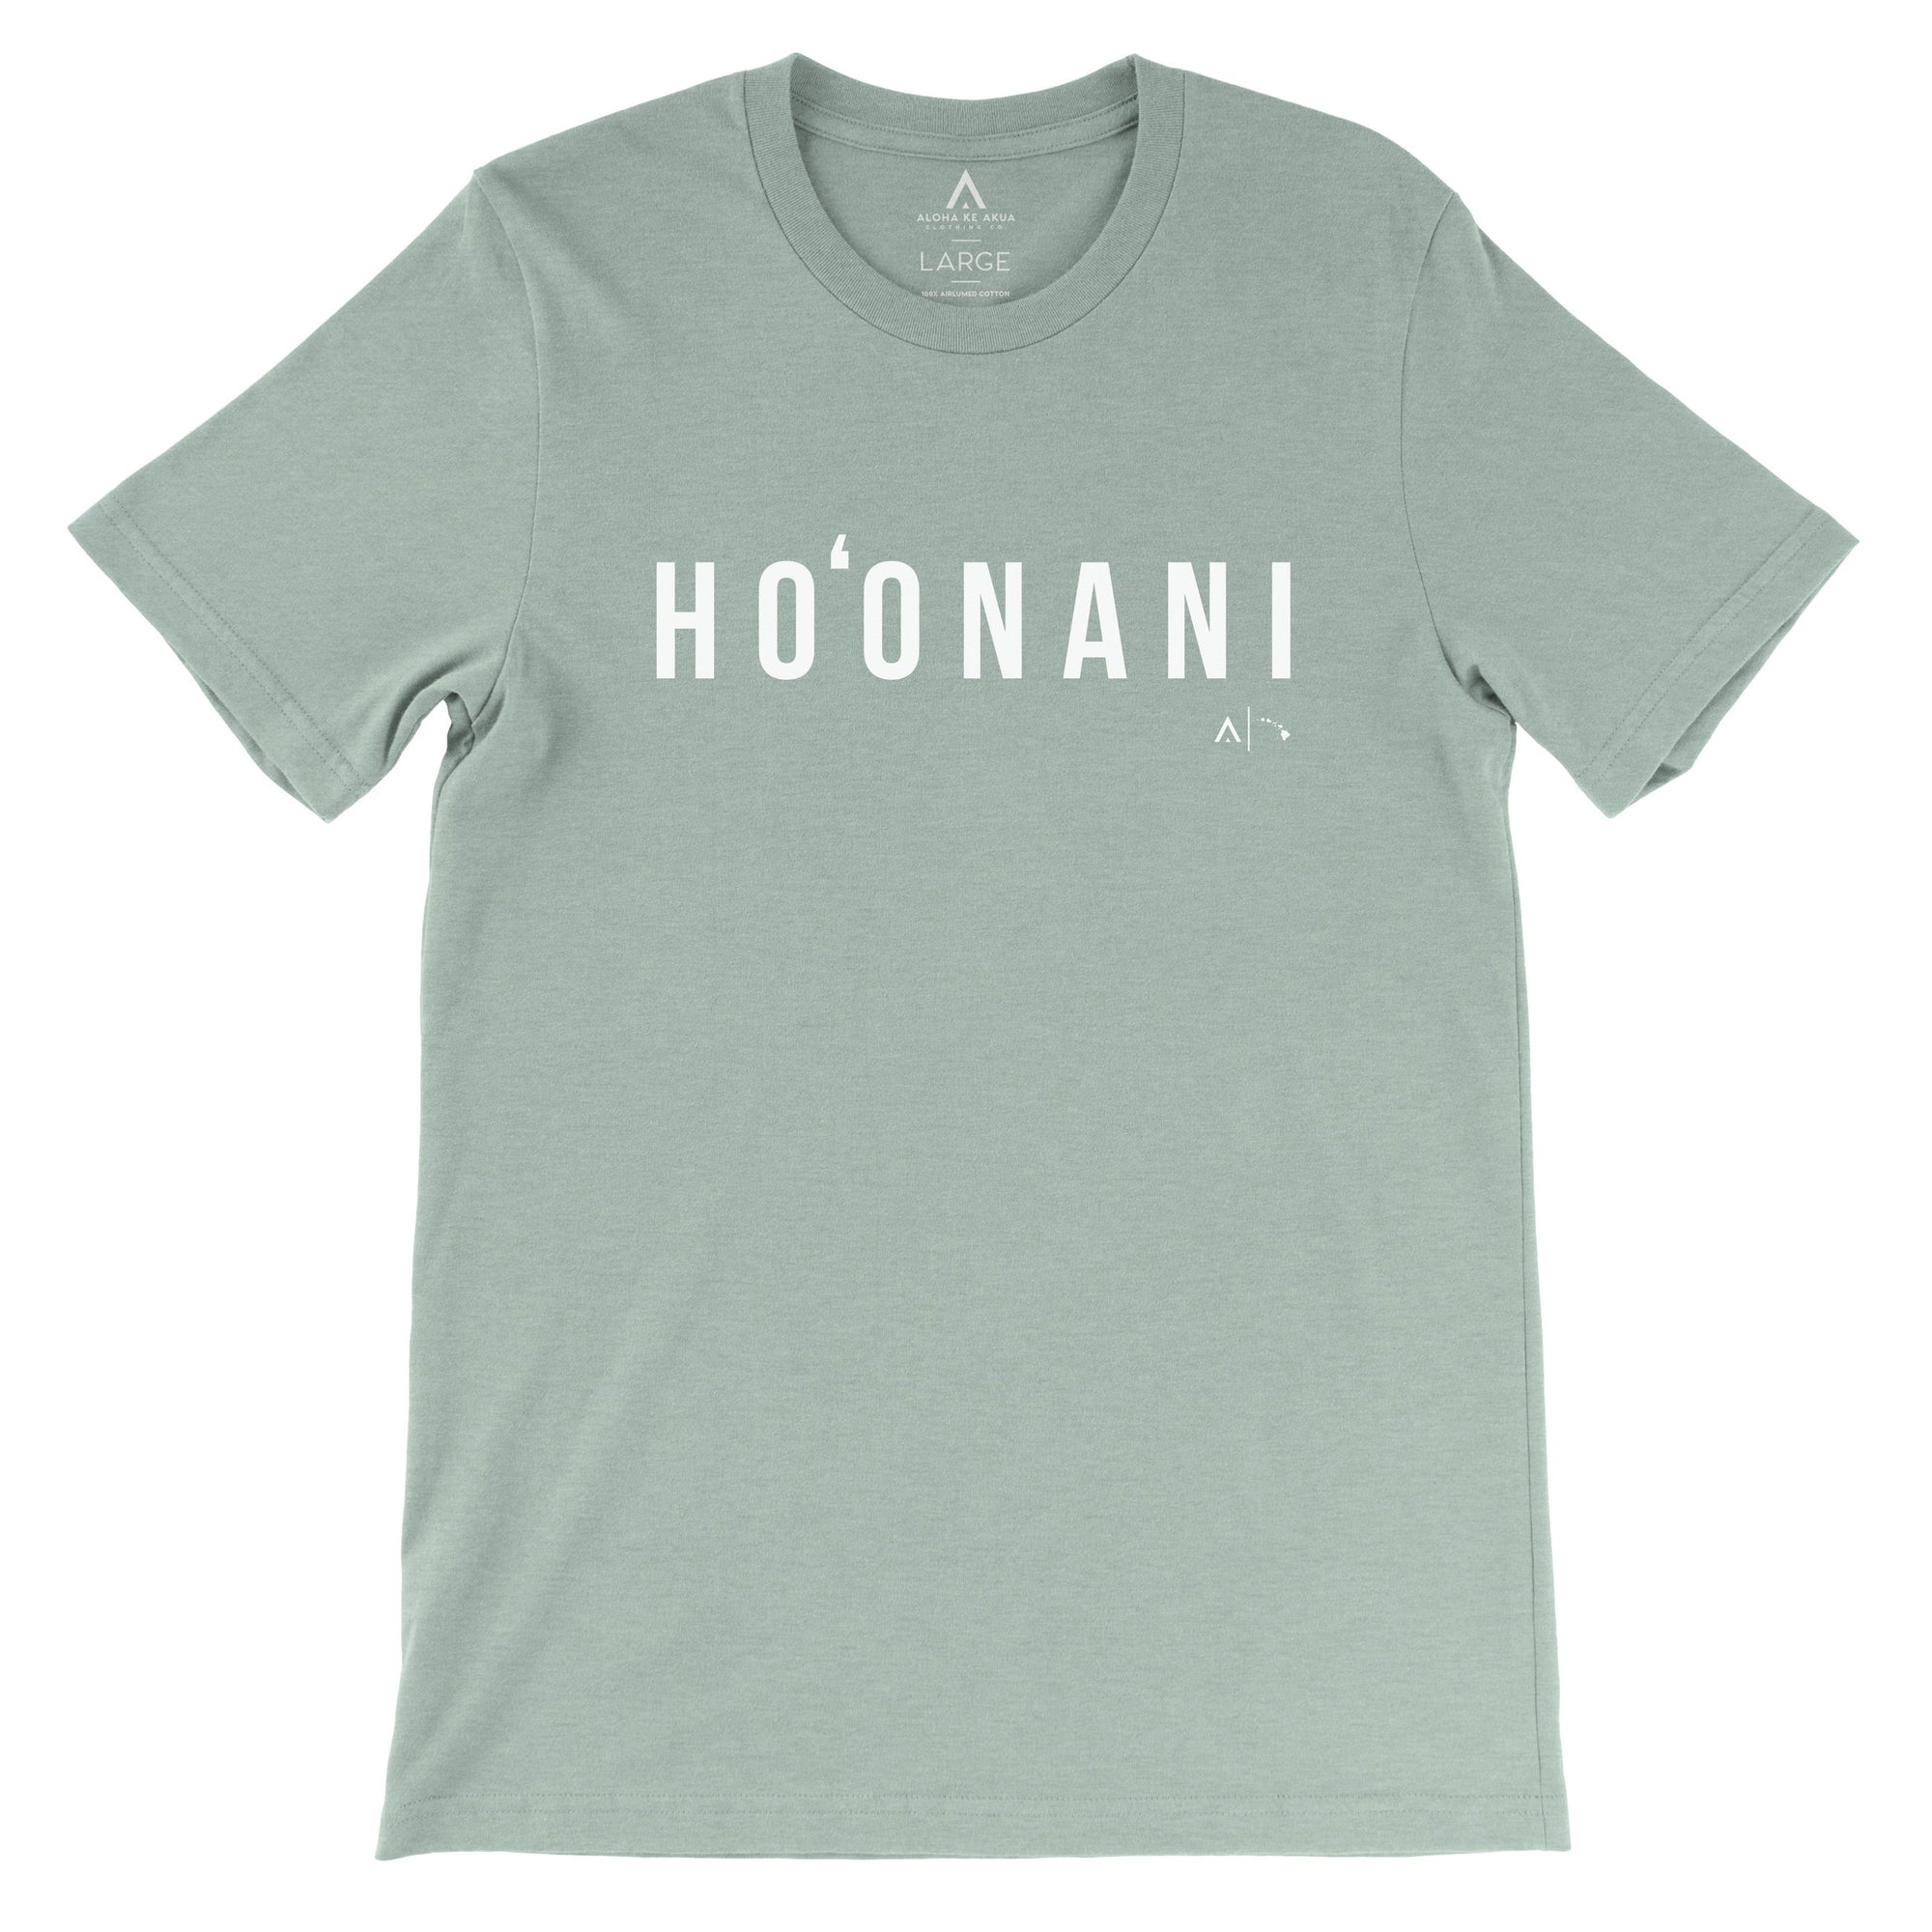 Pop-Up Mākeke - Aloha Ke Akua Clothing - Ho‘onani Men's Short Sleeve T-Shirt - Heather Sage - Front View